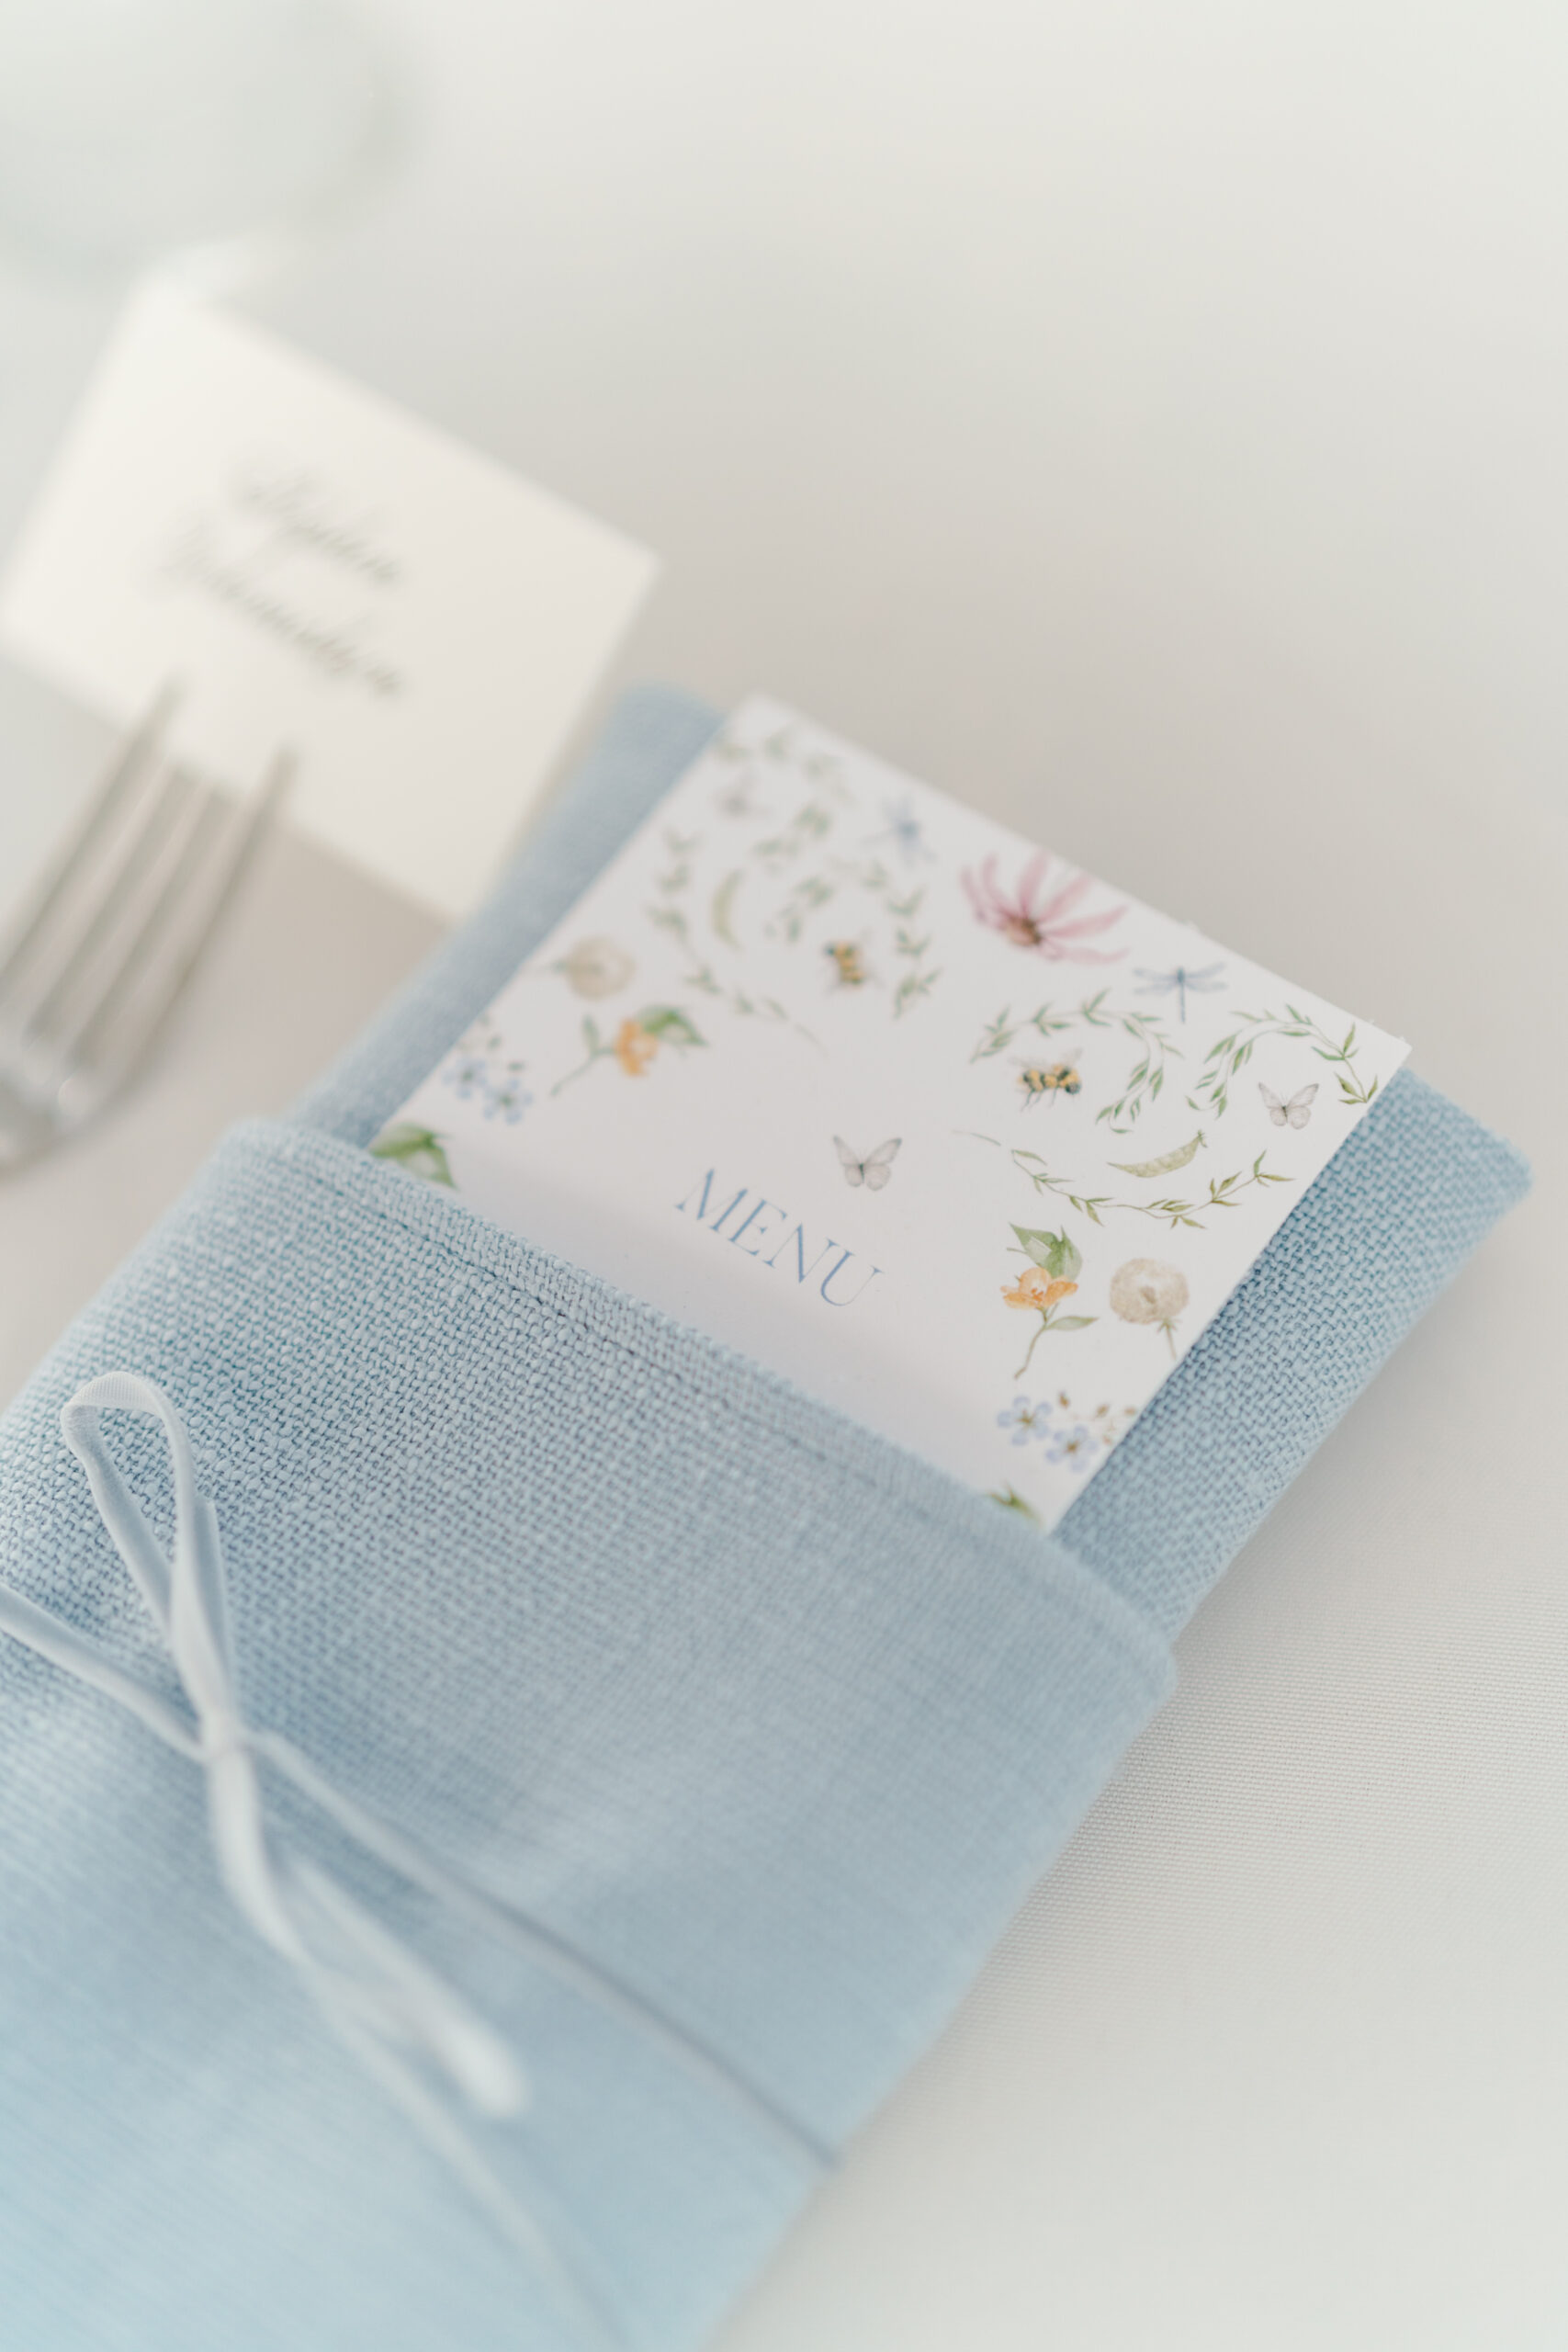 Wildflower themed wedding reception food menu. Bees and butterflies. Light blue linen napkin.